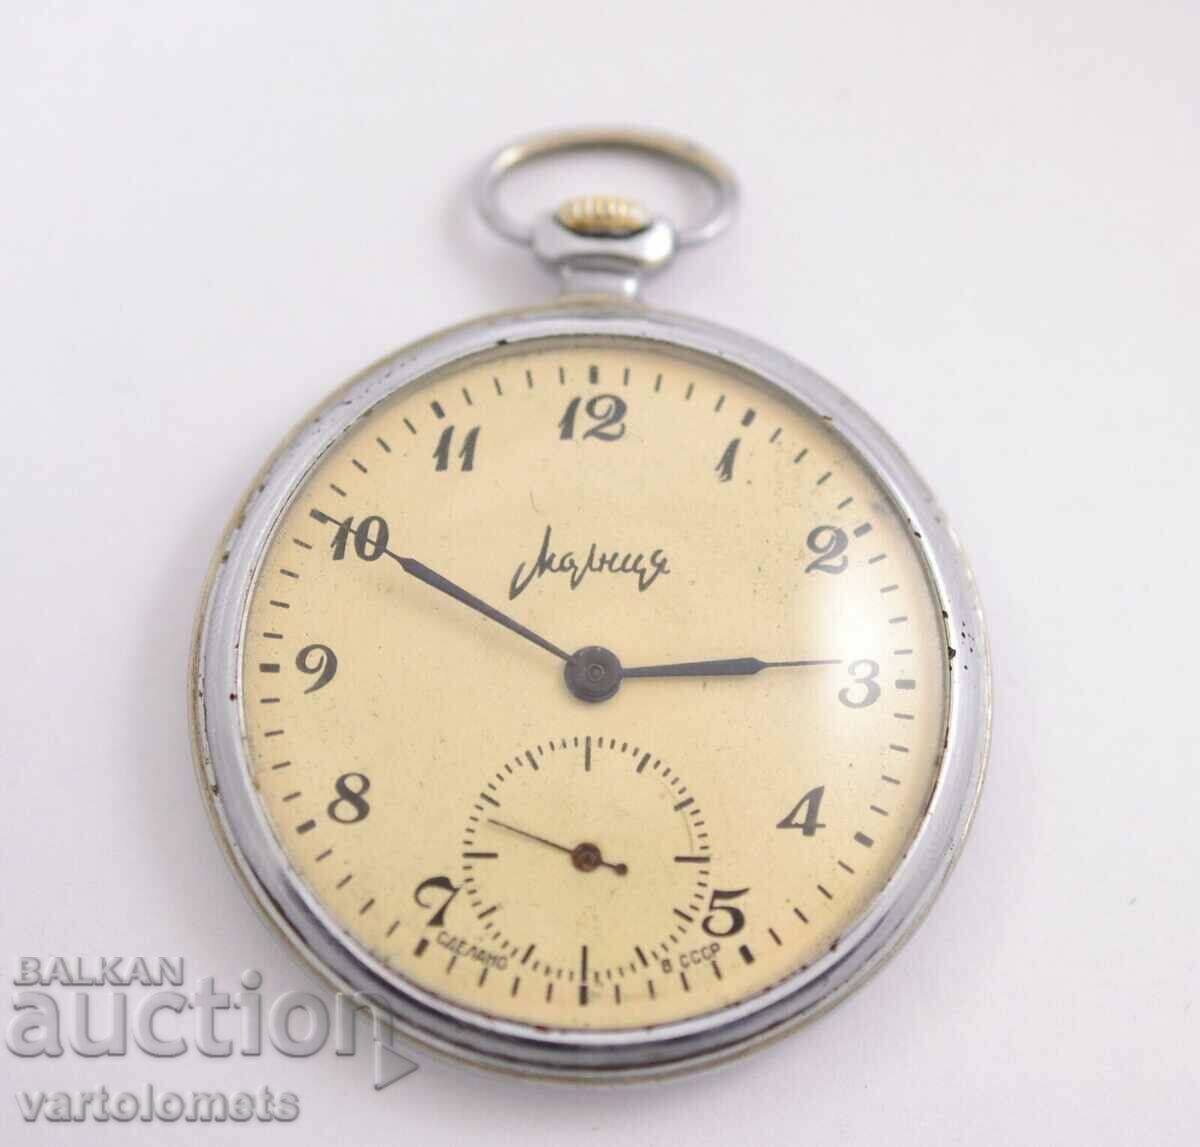 MOLTIYA USSR pocket watch - works